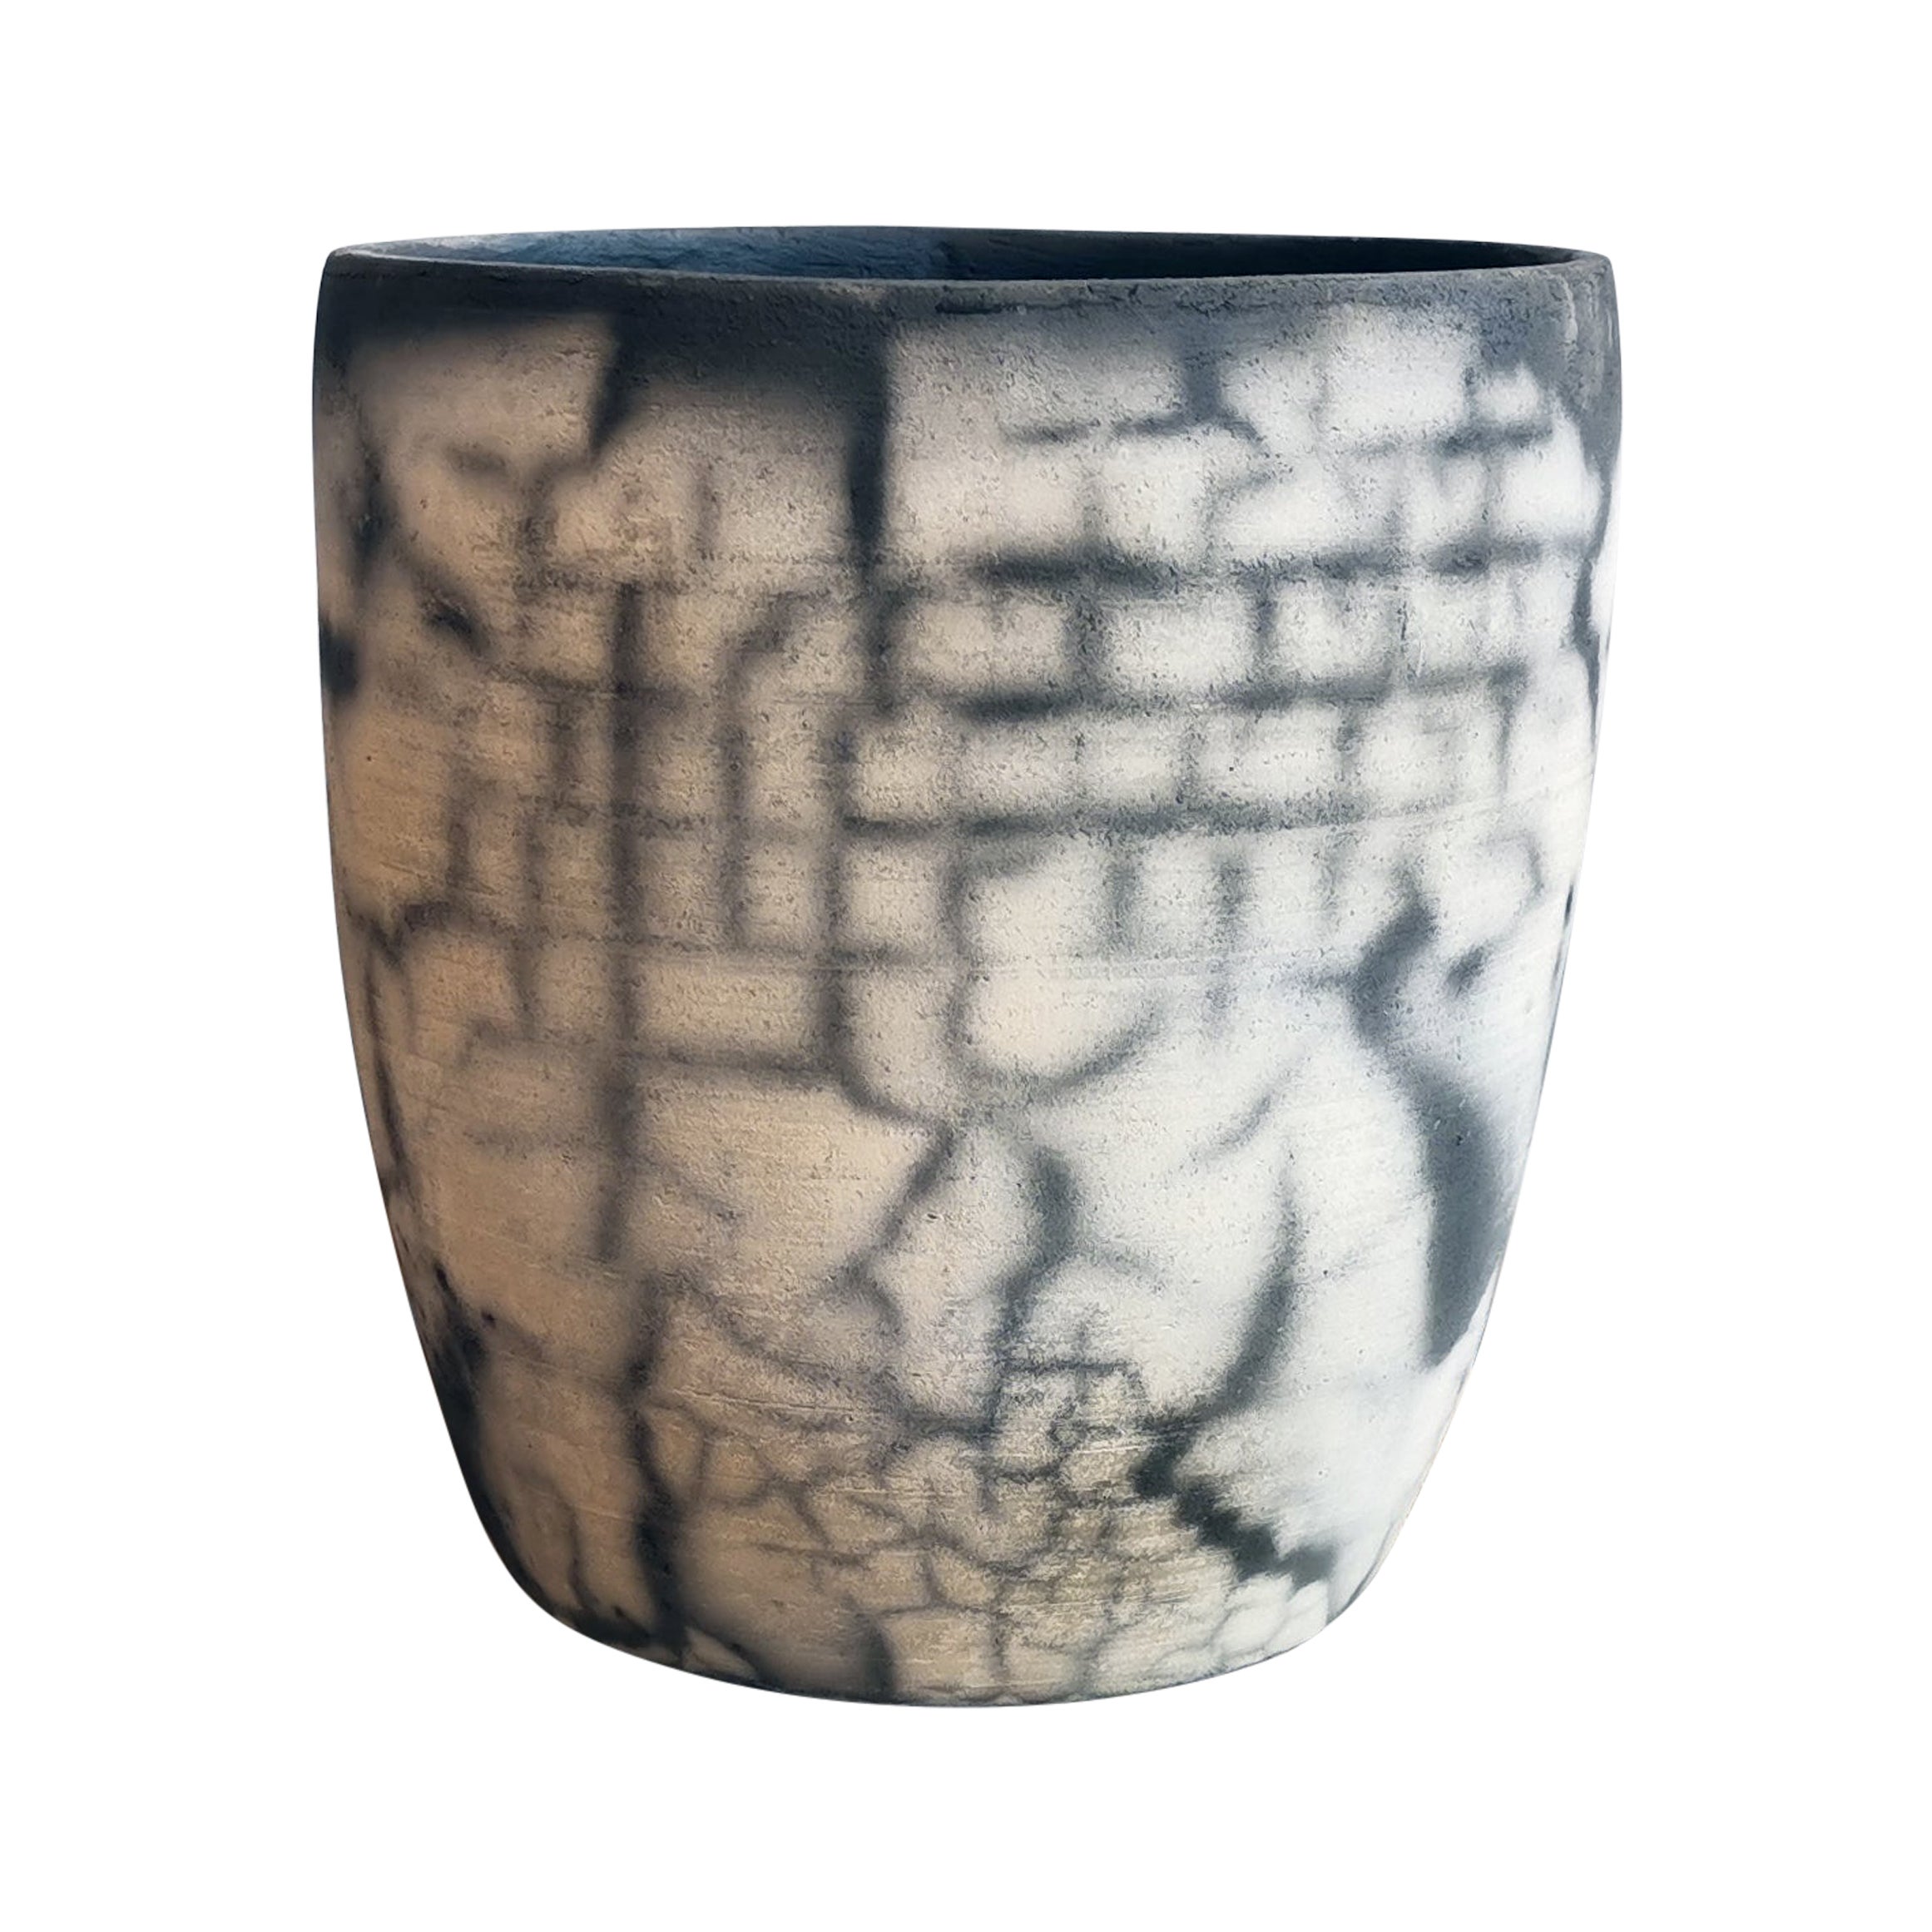 Seicho Raku Pflanzgefäß Keramik - Geräuchertes Raku - Handgemachte Keramik